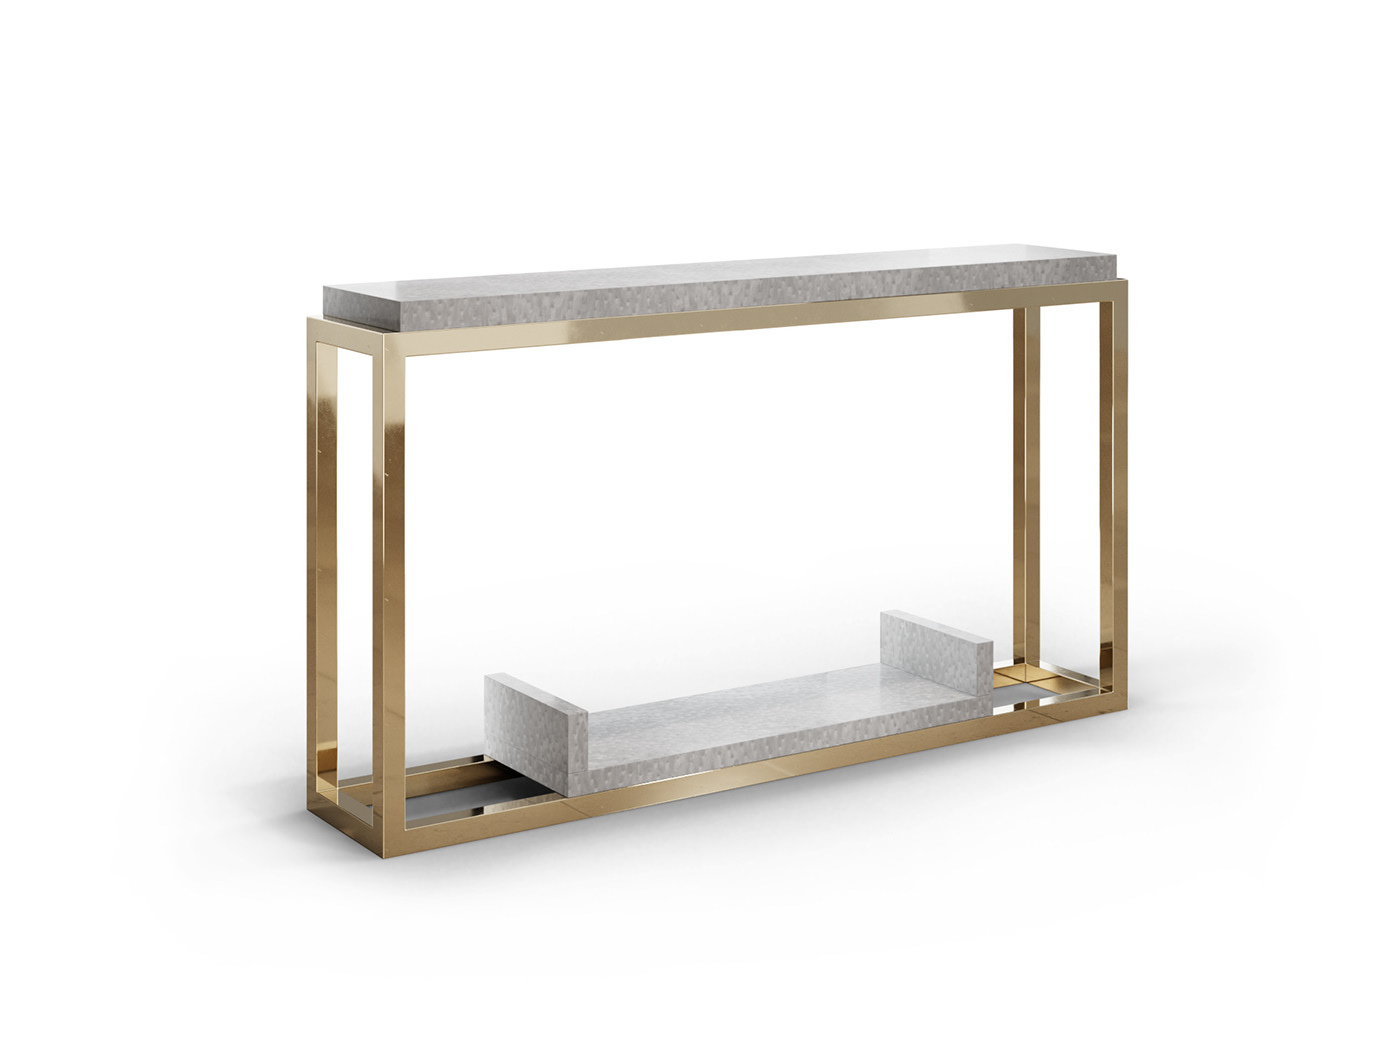 3D blender cycles design furniture Render table visualization